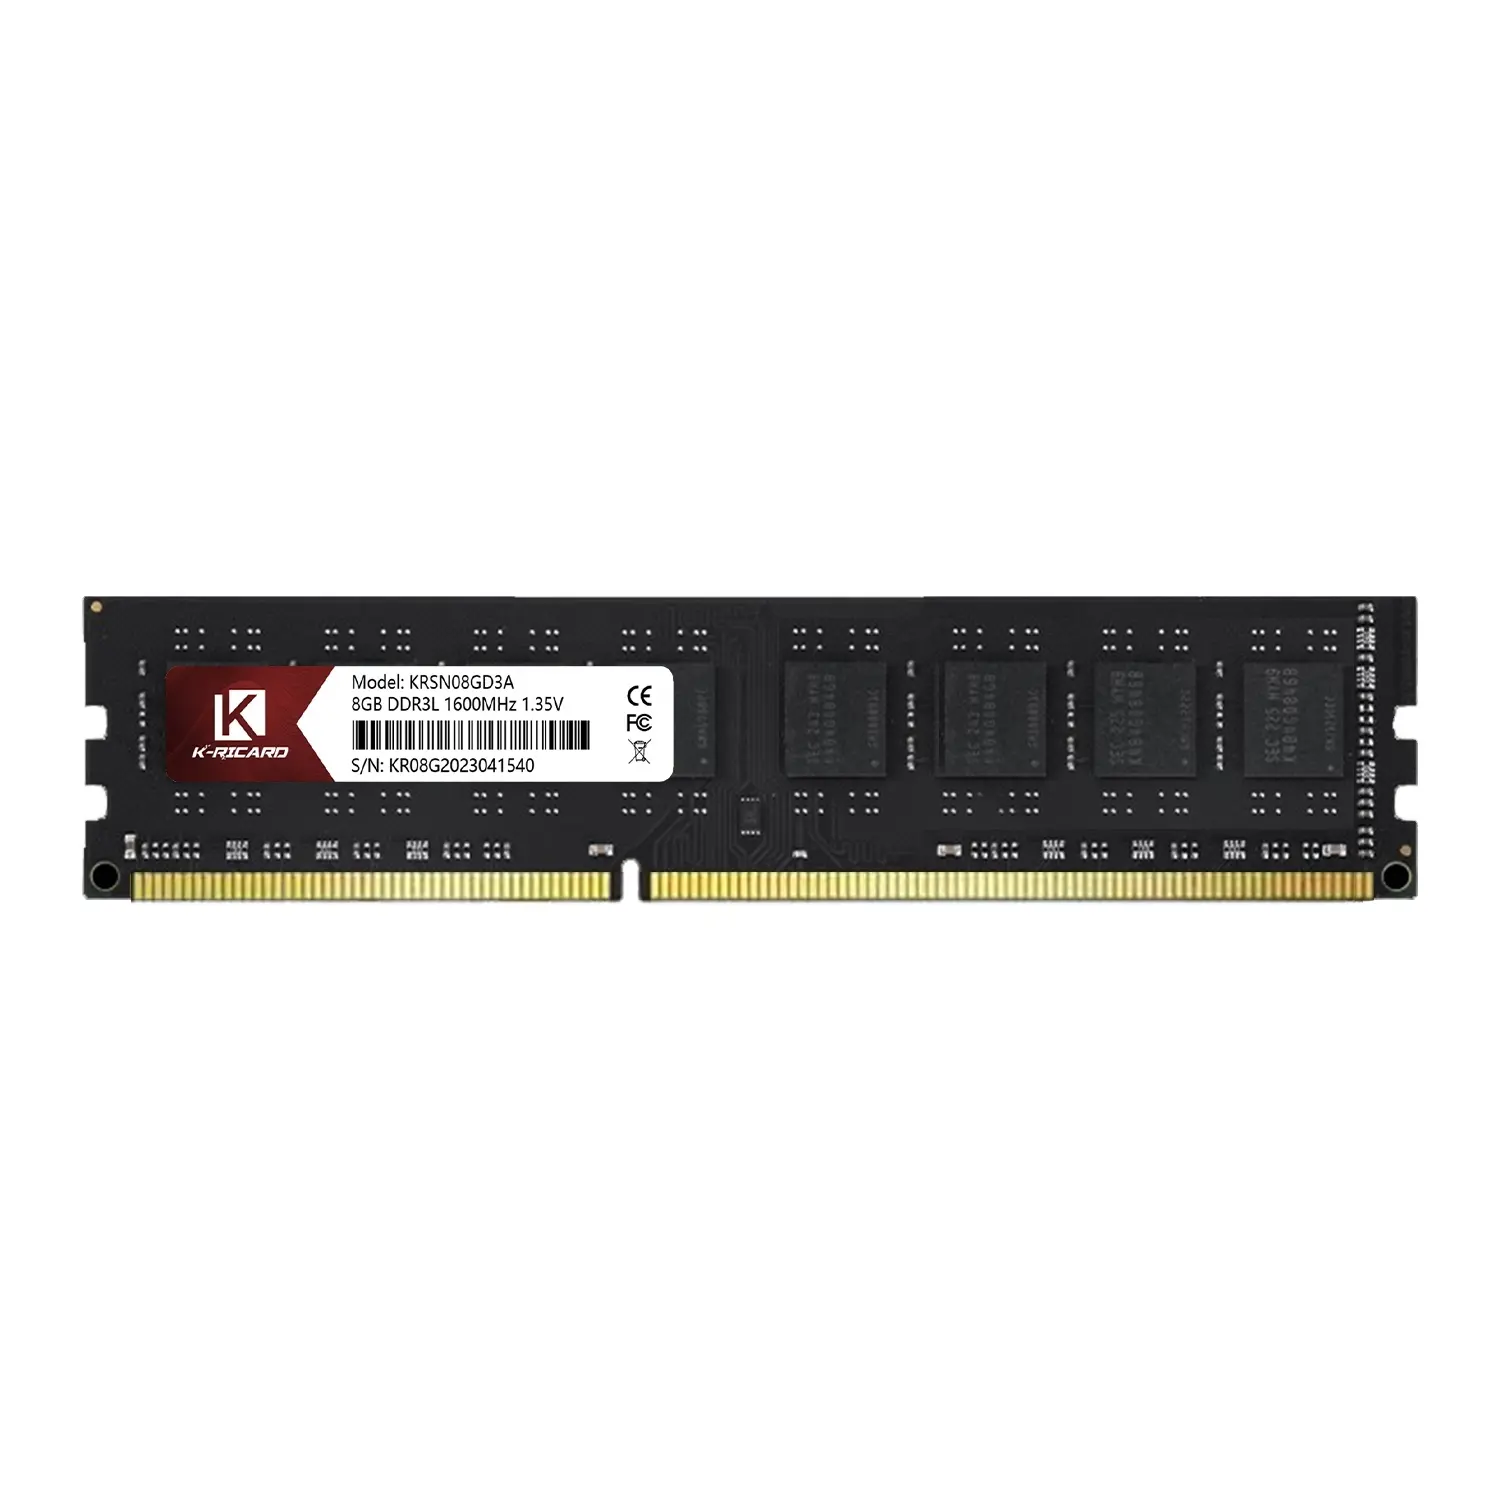 Großhandels preis RAM für Desktop DDR3 8GB 1600MHz